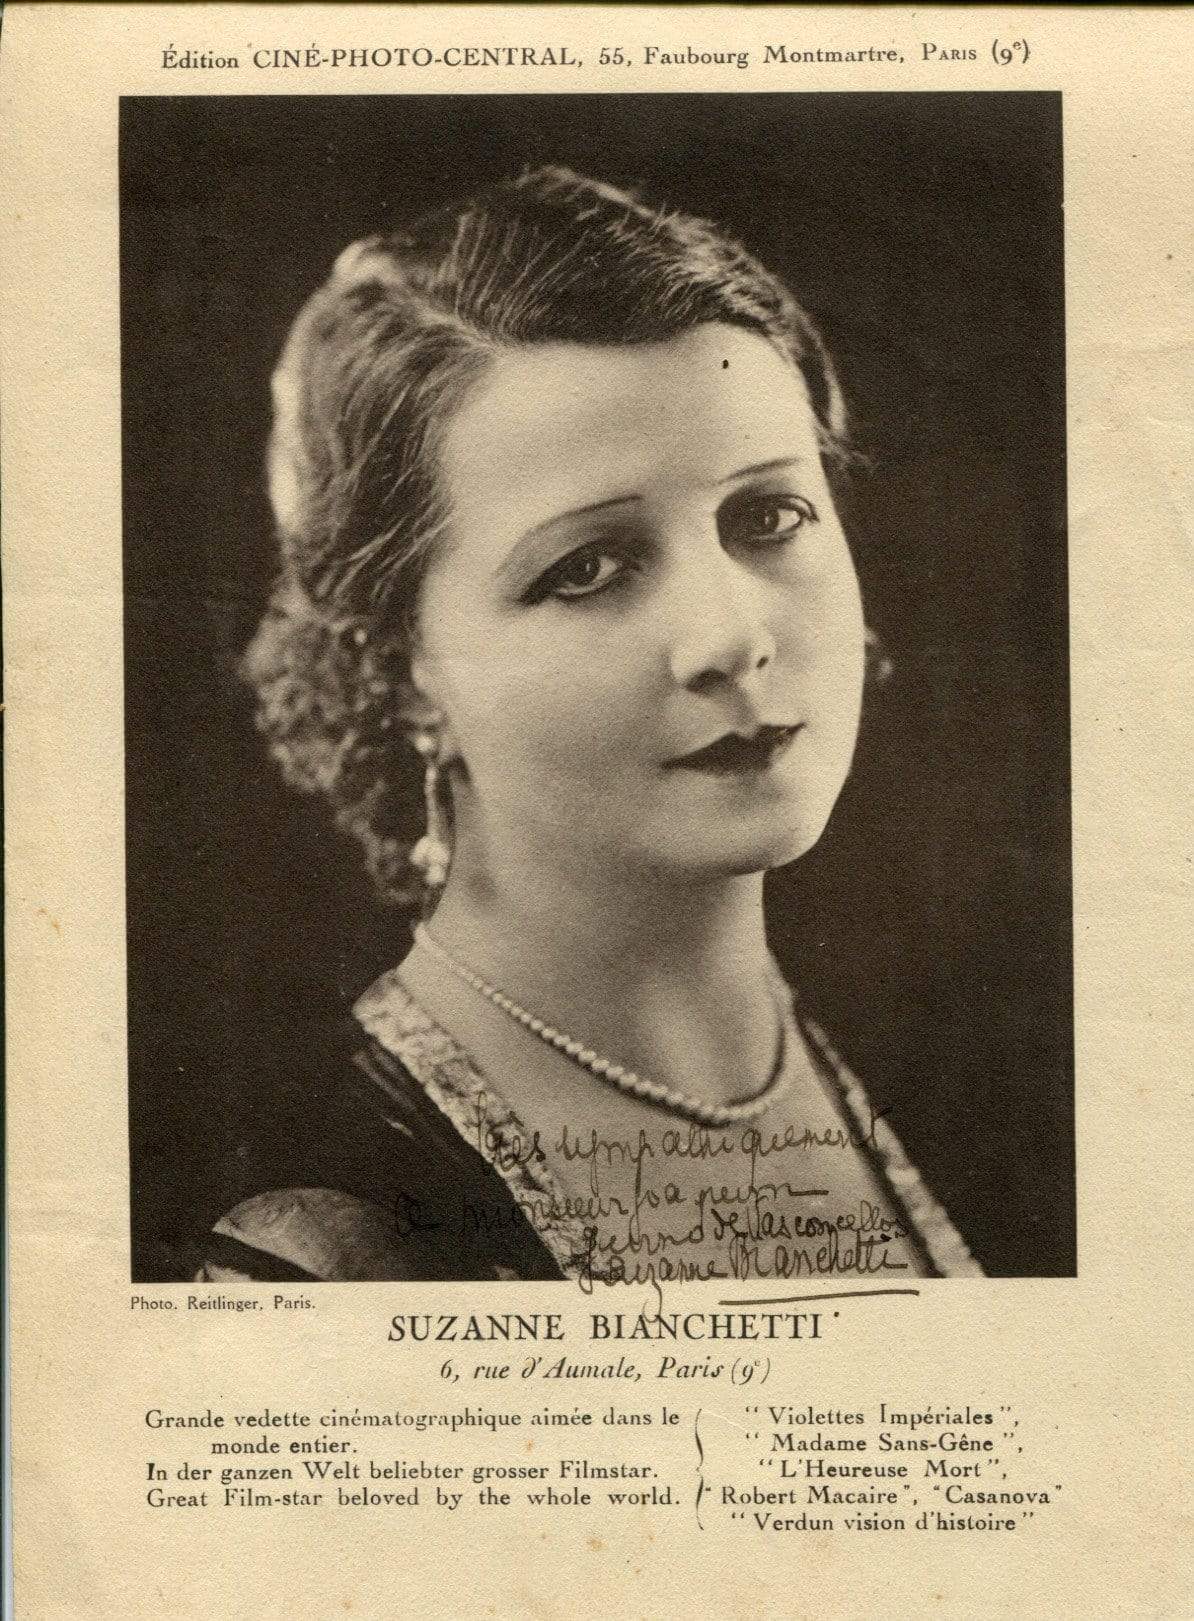 Bianchetti, Suzanne autograph